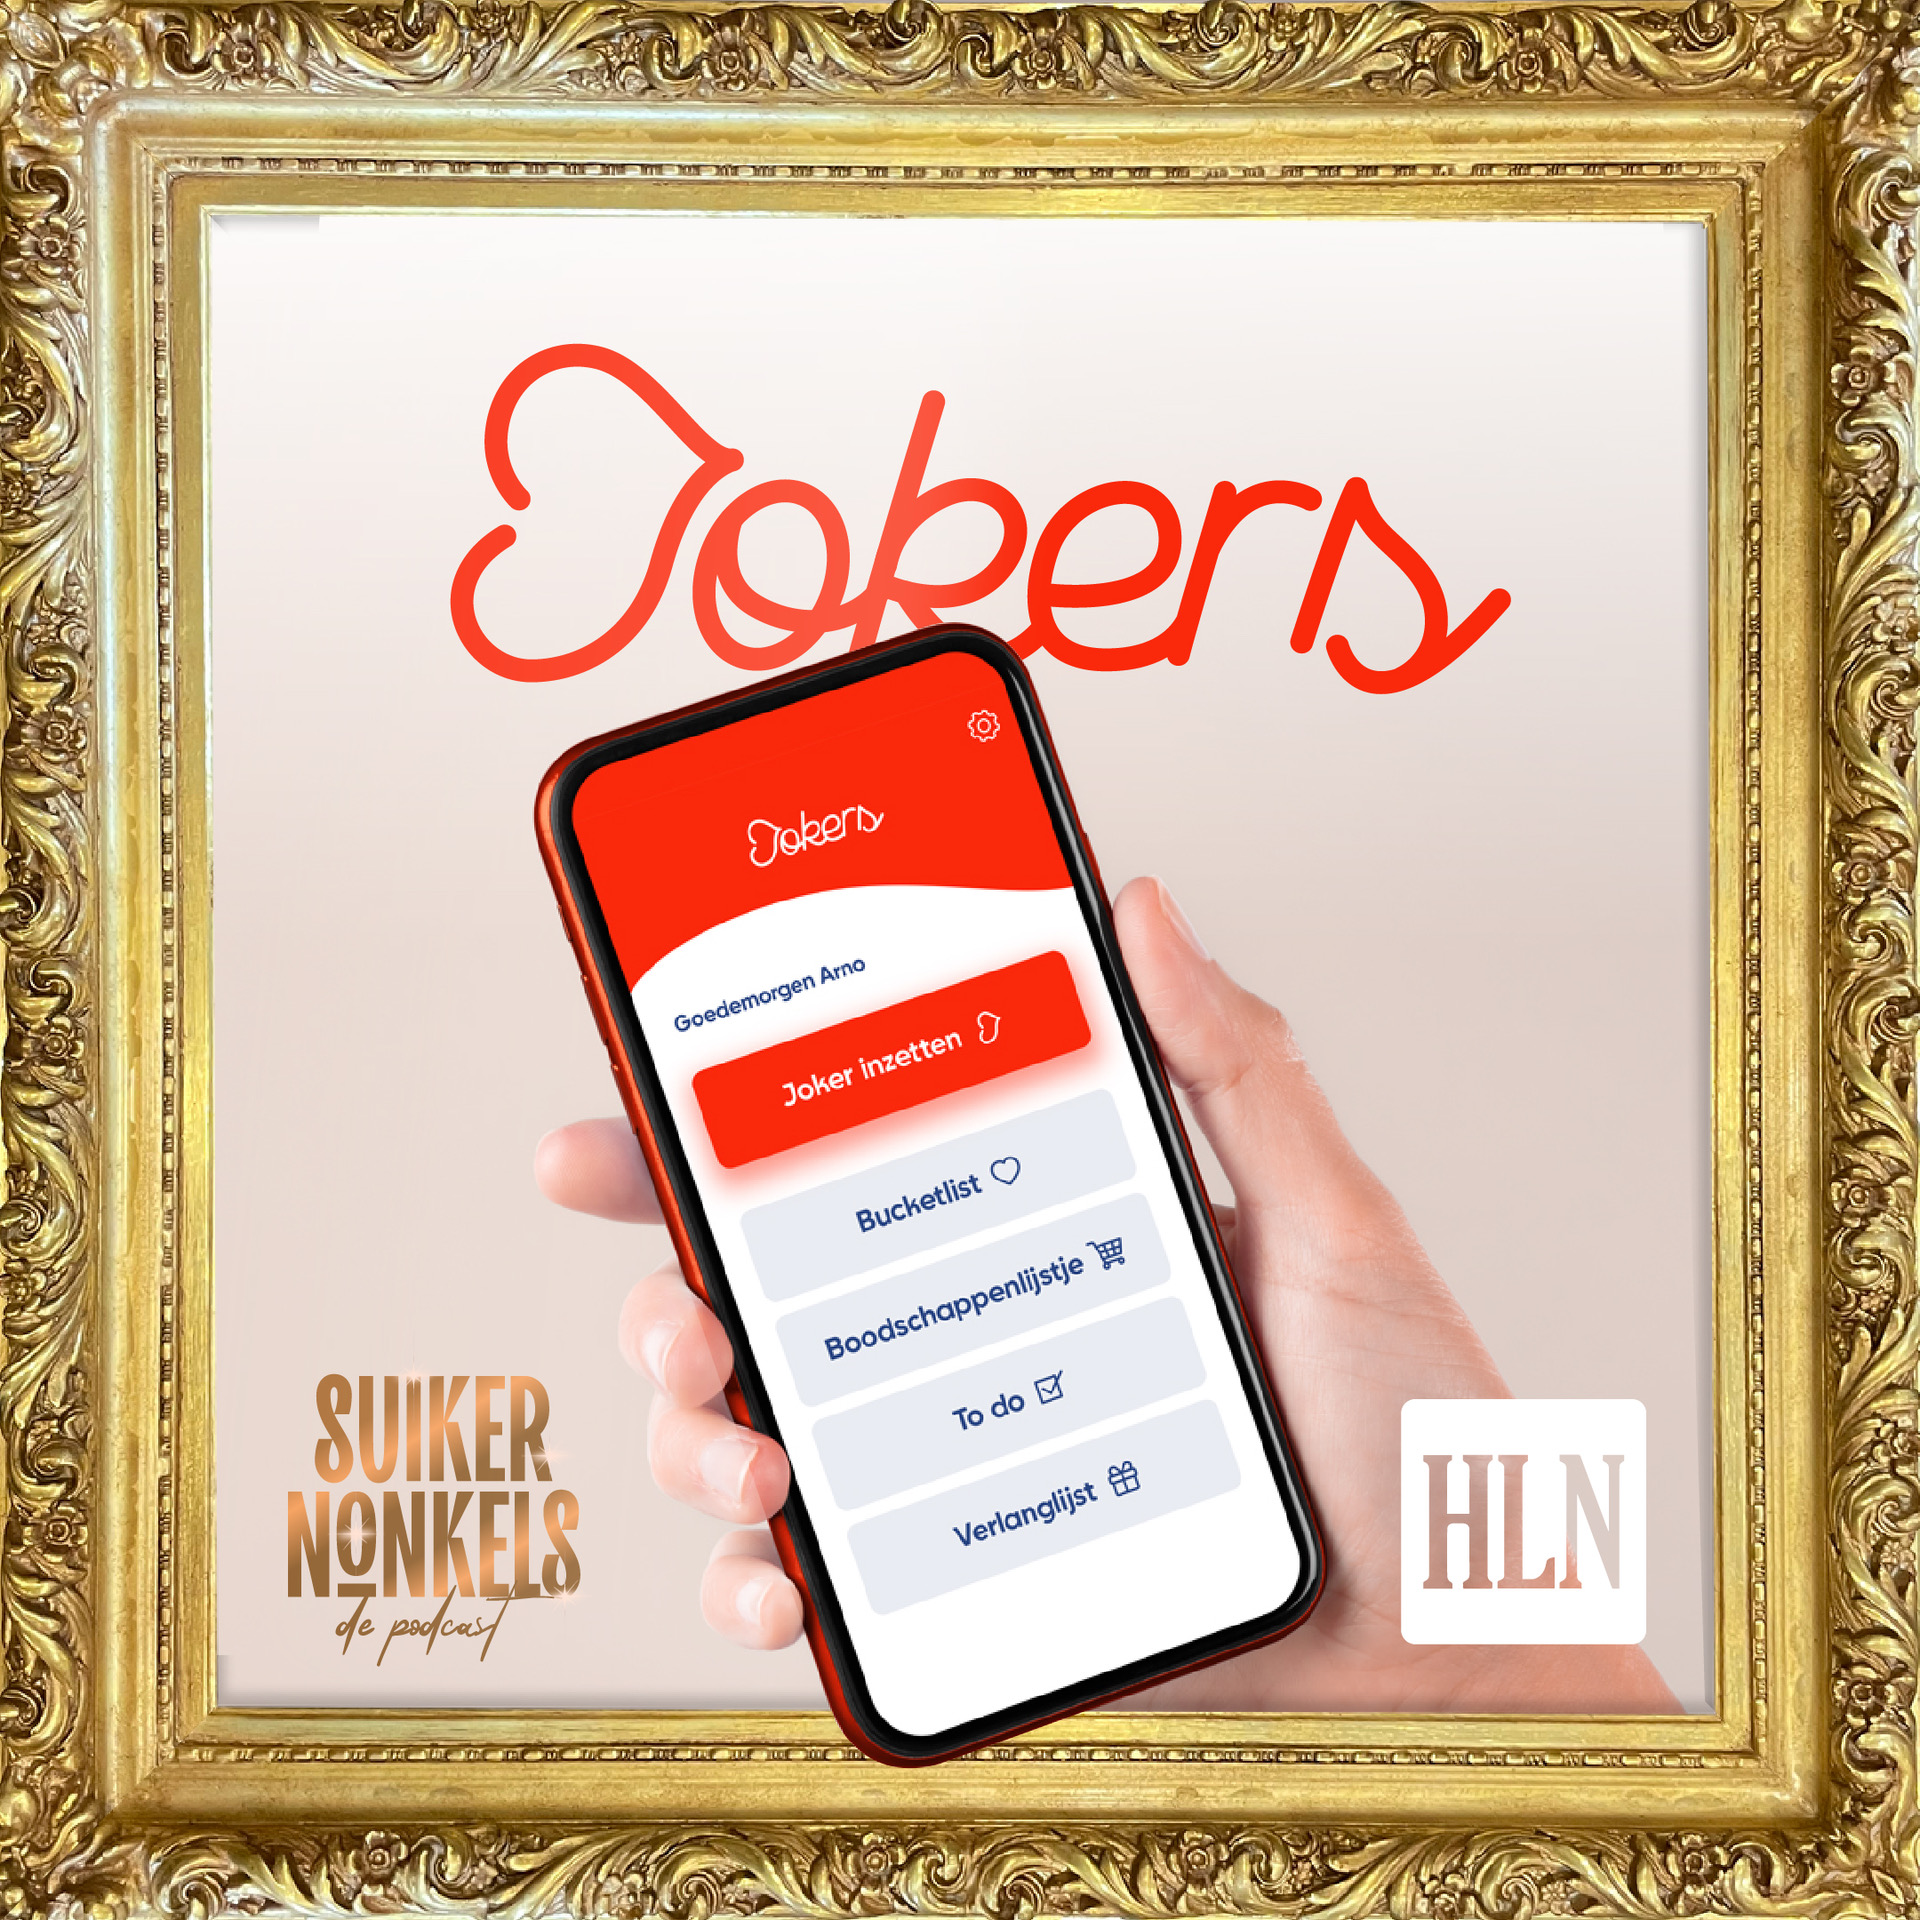 #10 Sarah, CEO van Waer Waters, krijgt het warm van onze app! Update Jokers